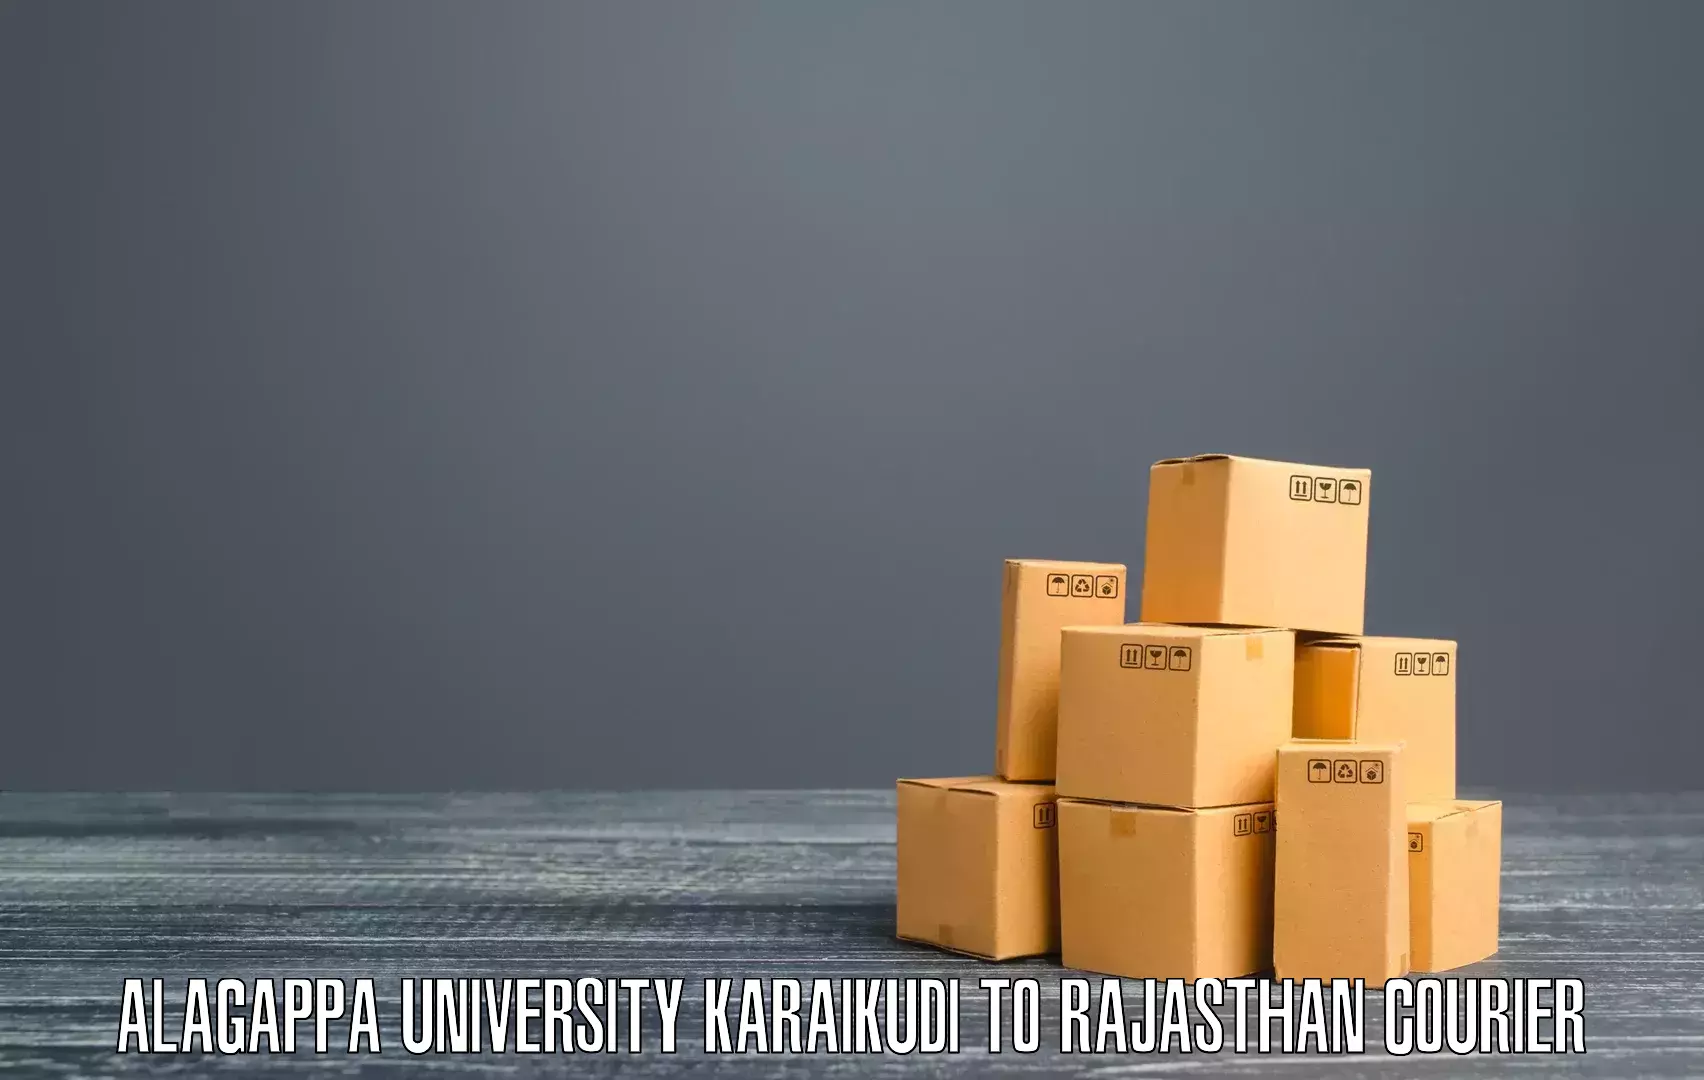 Express shipping Alagappa University Karaikudi to Malsisar